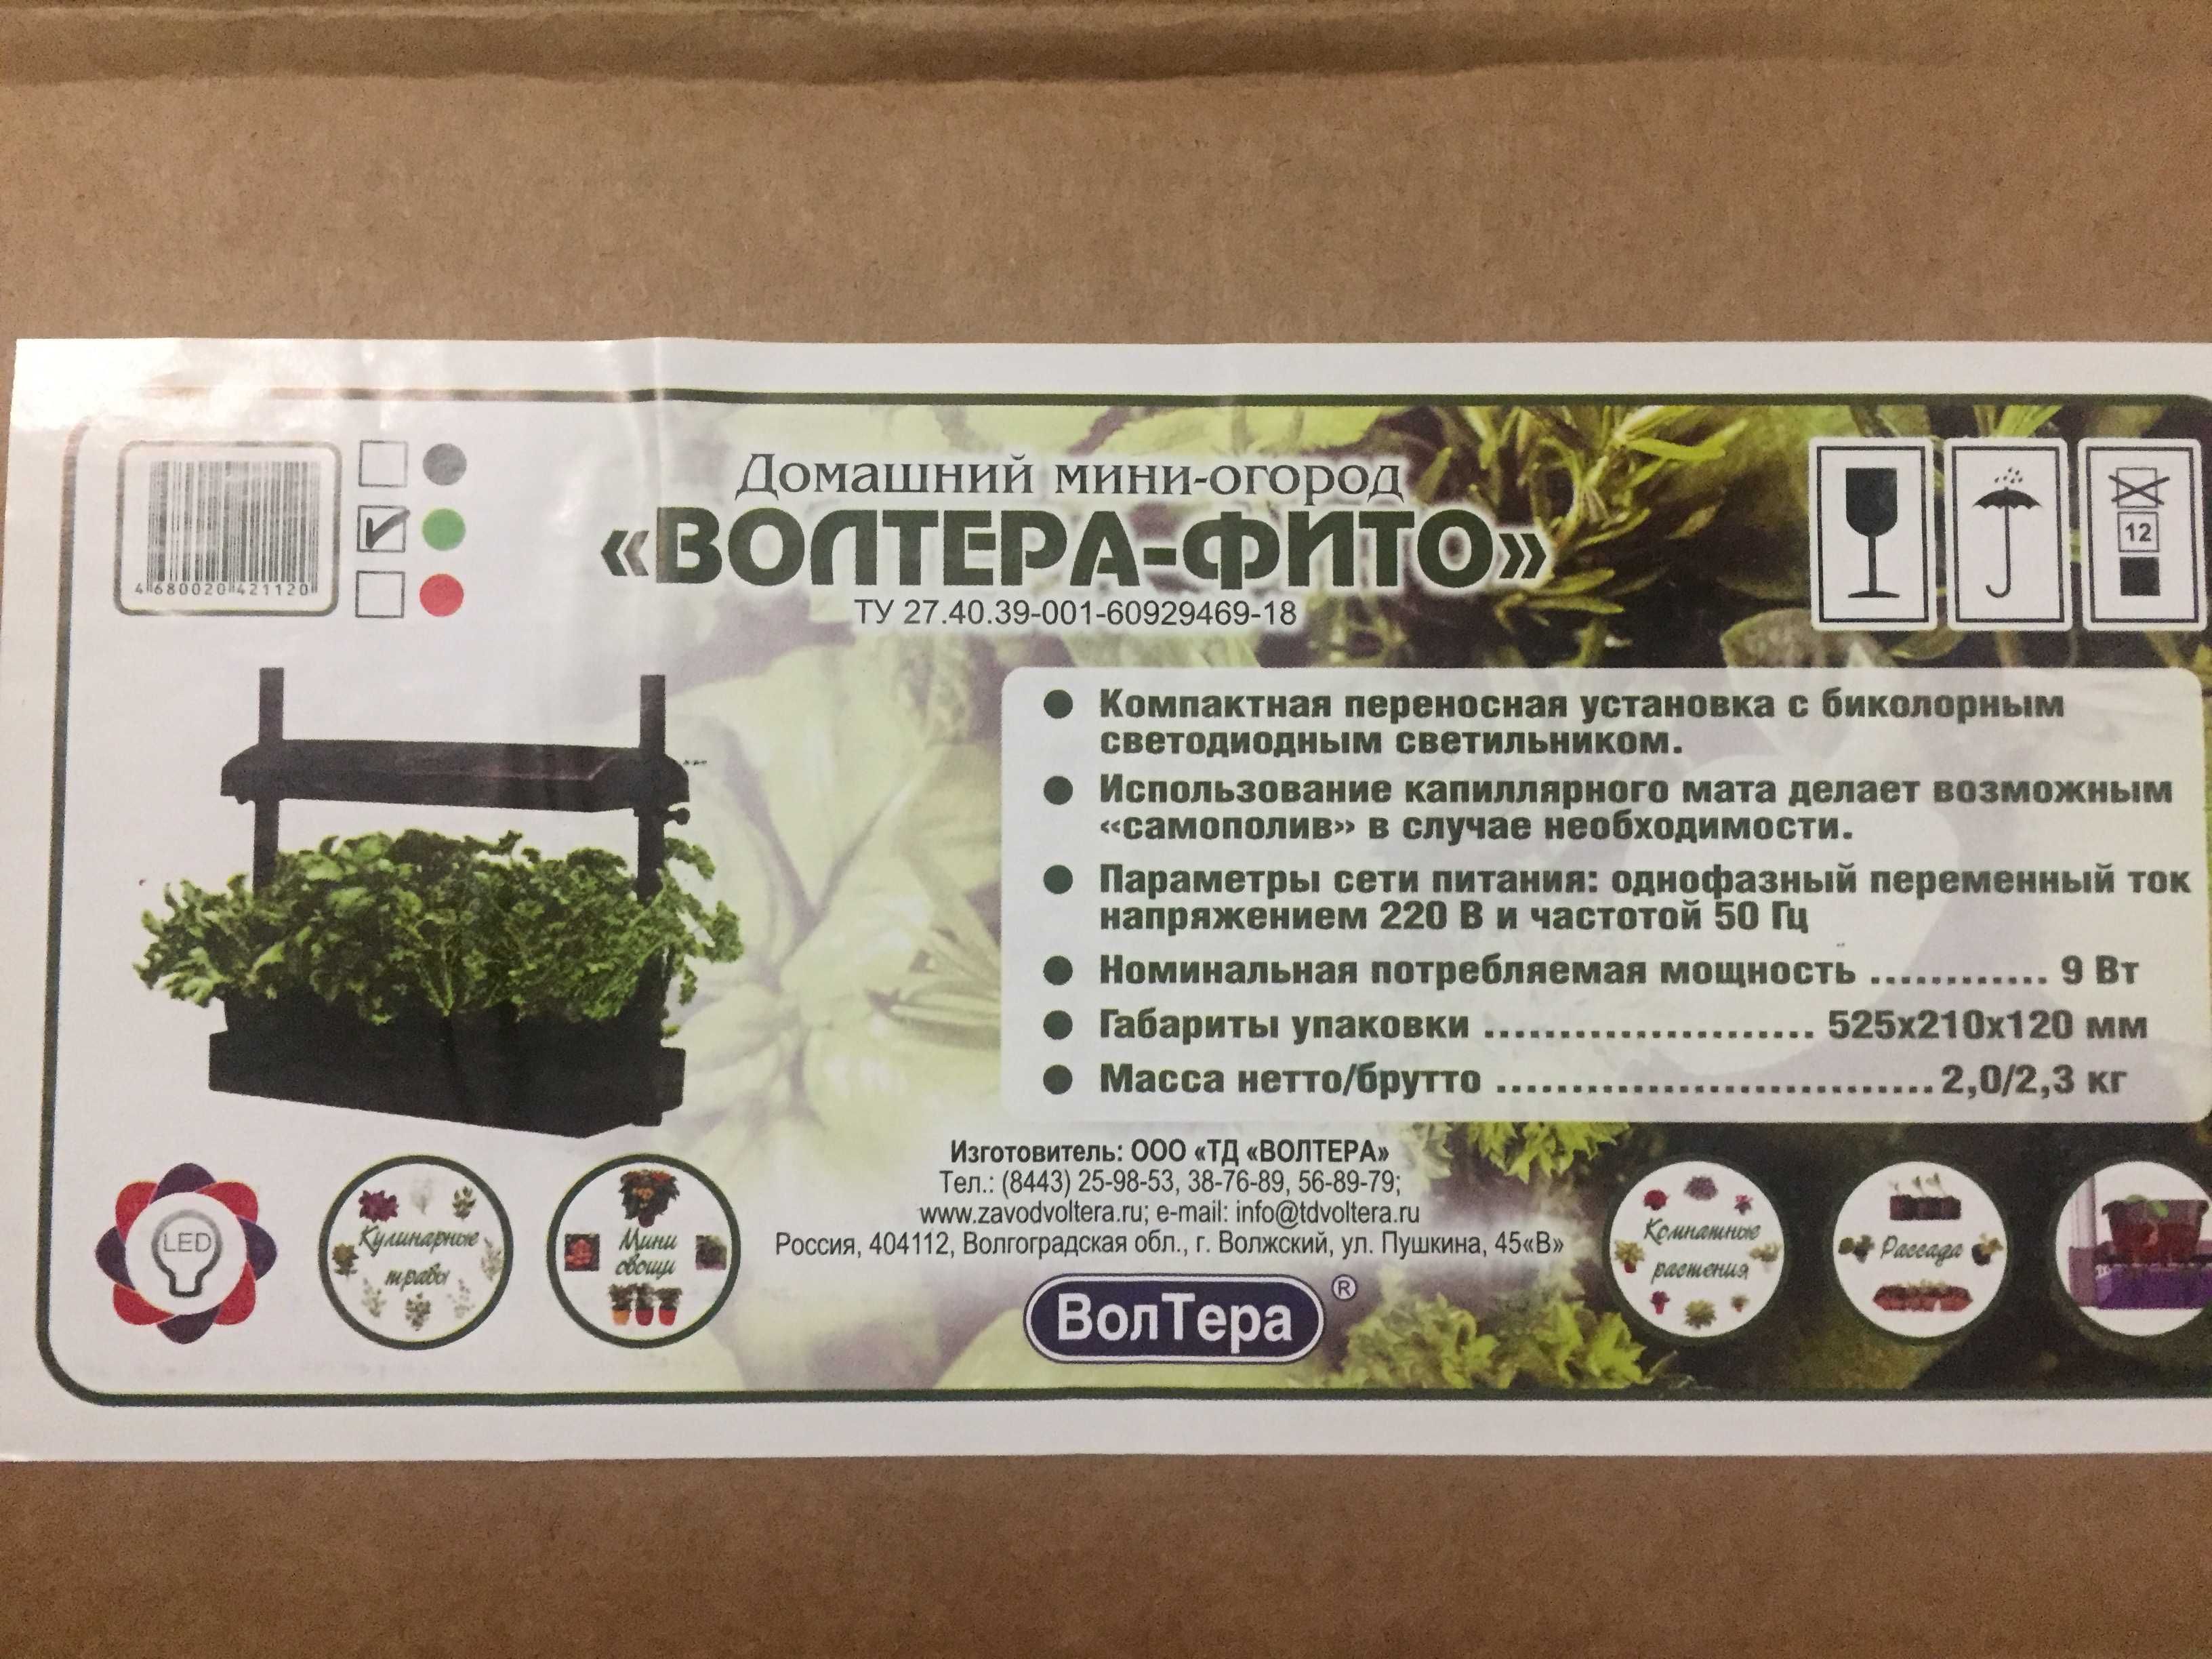 Домашній міні-город "ВолтераФіто" для вирощування мікрозелені, розсади